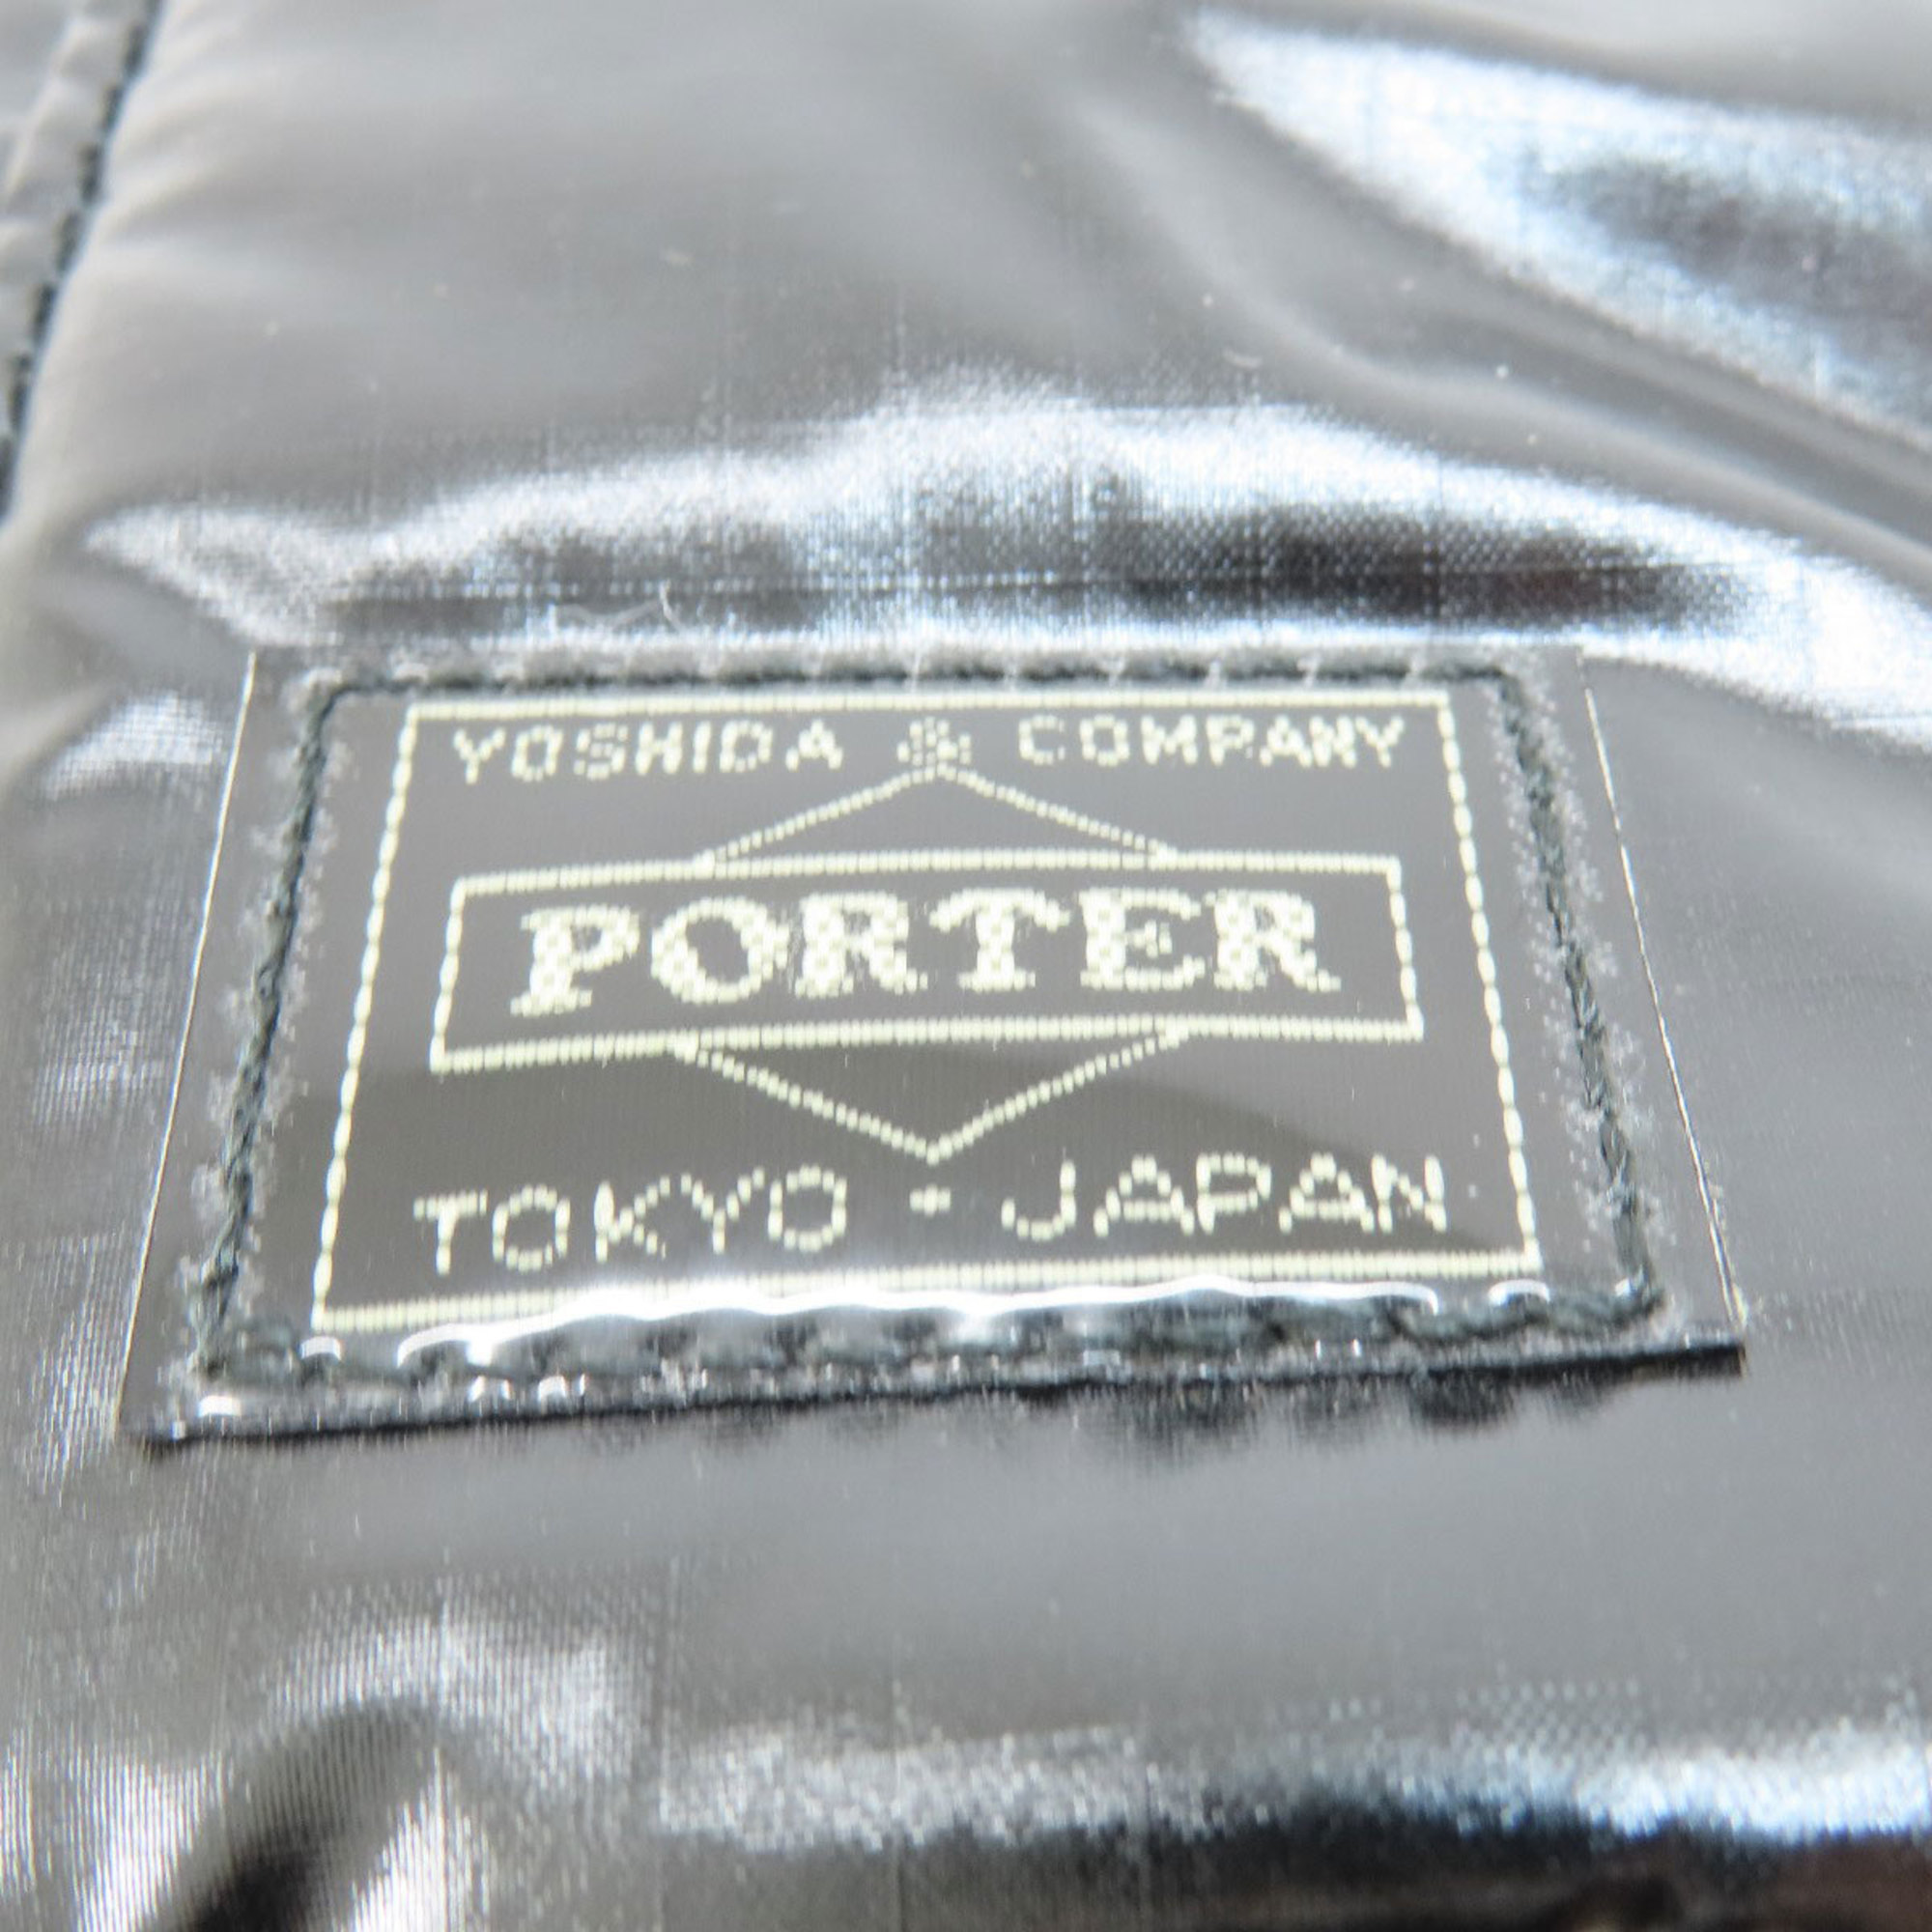 Porter Tote Bag Nylon Material Women's PORTER